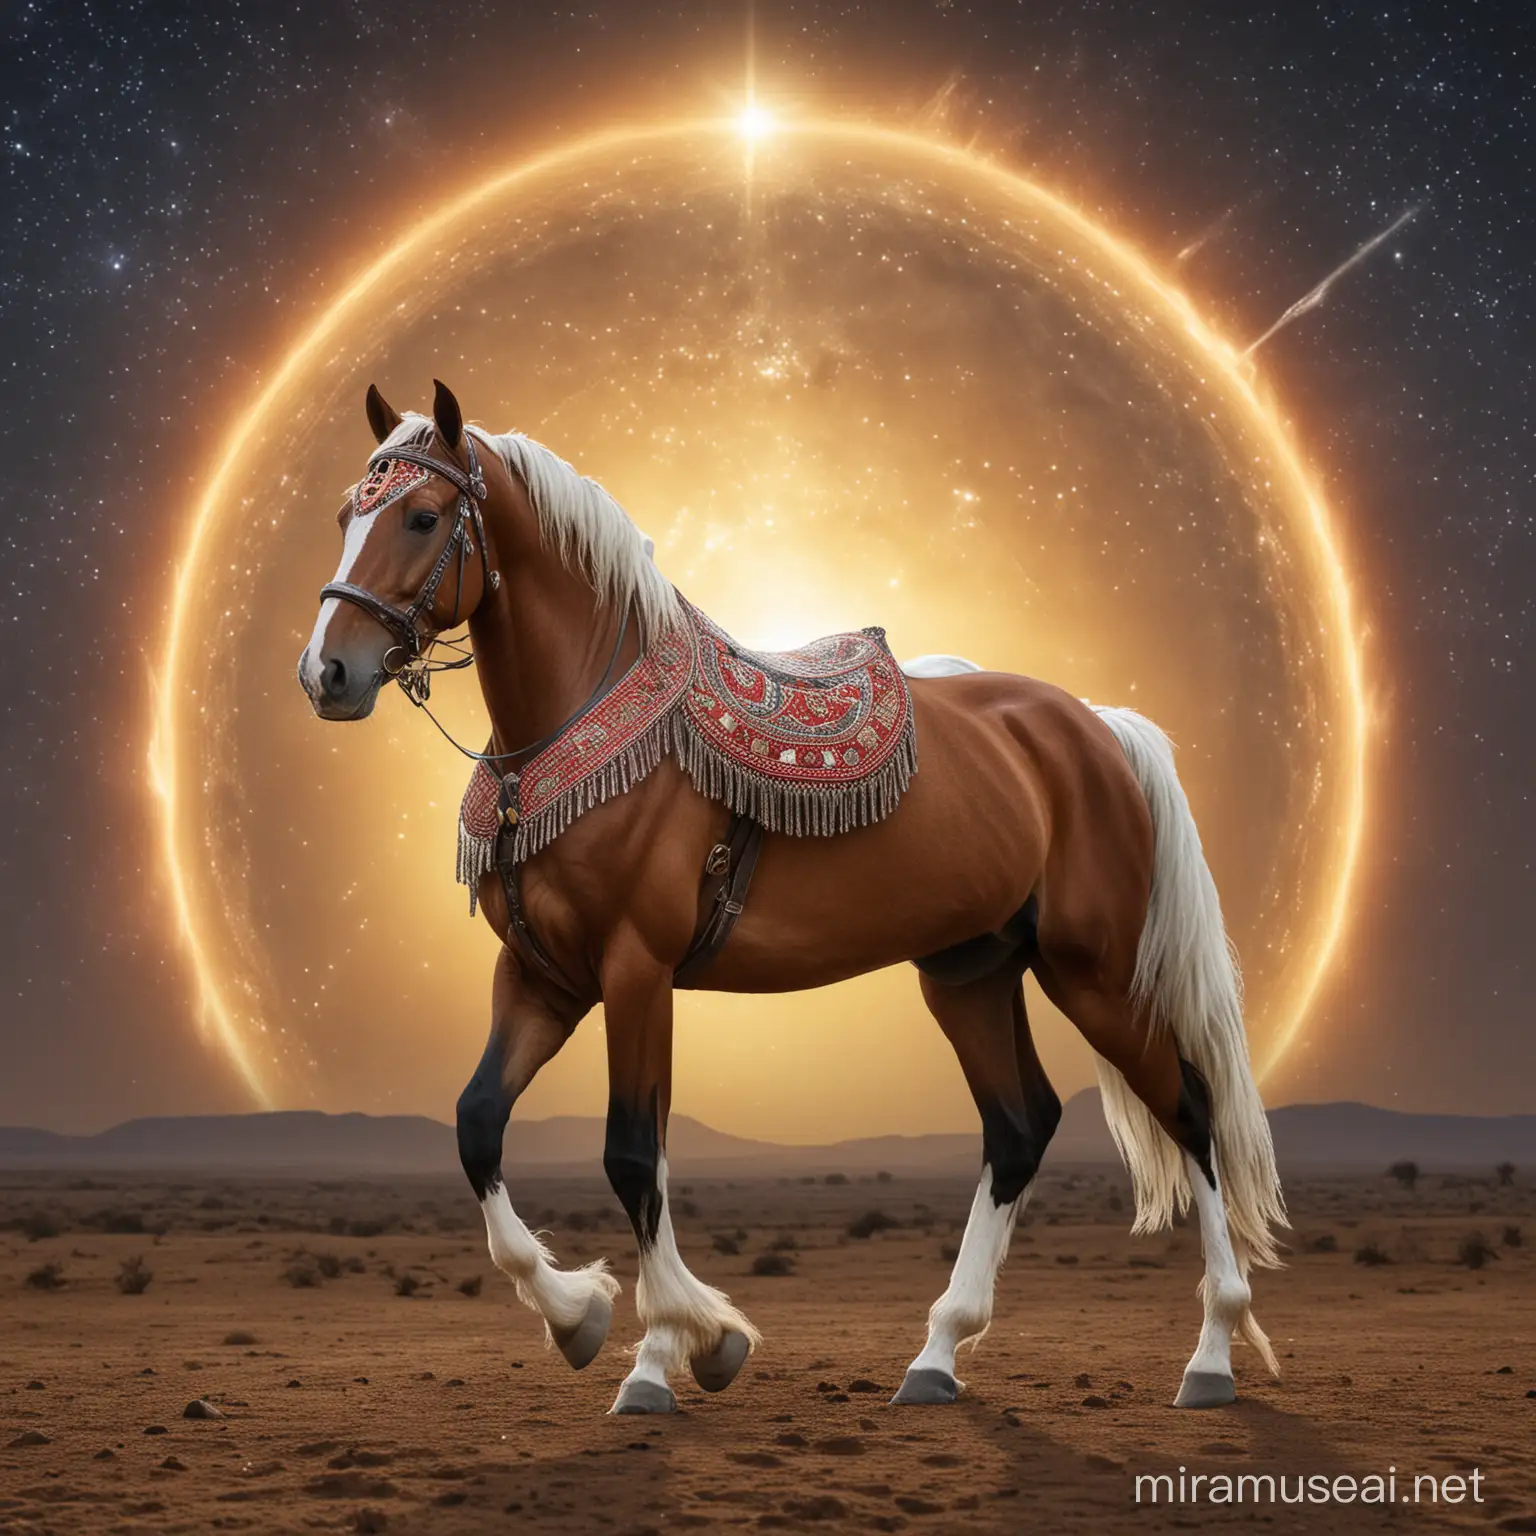 akal tekke horse, halo background
